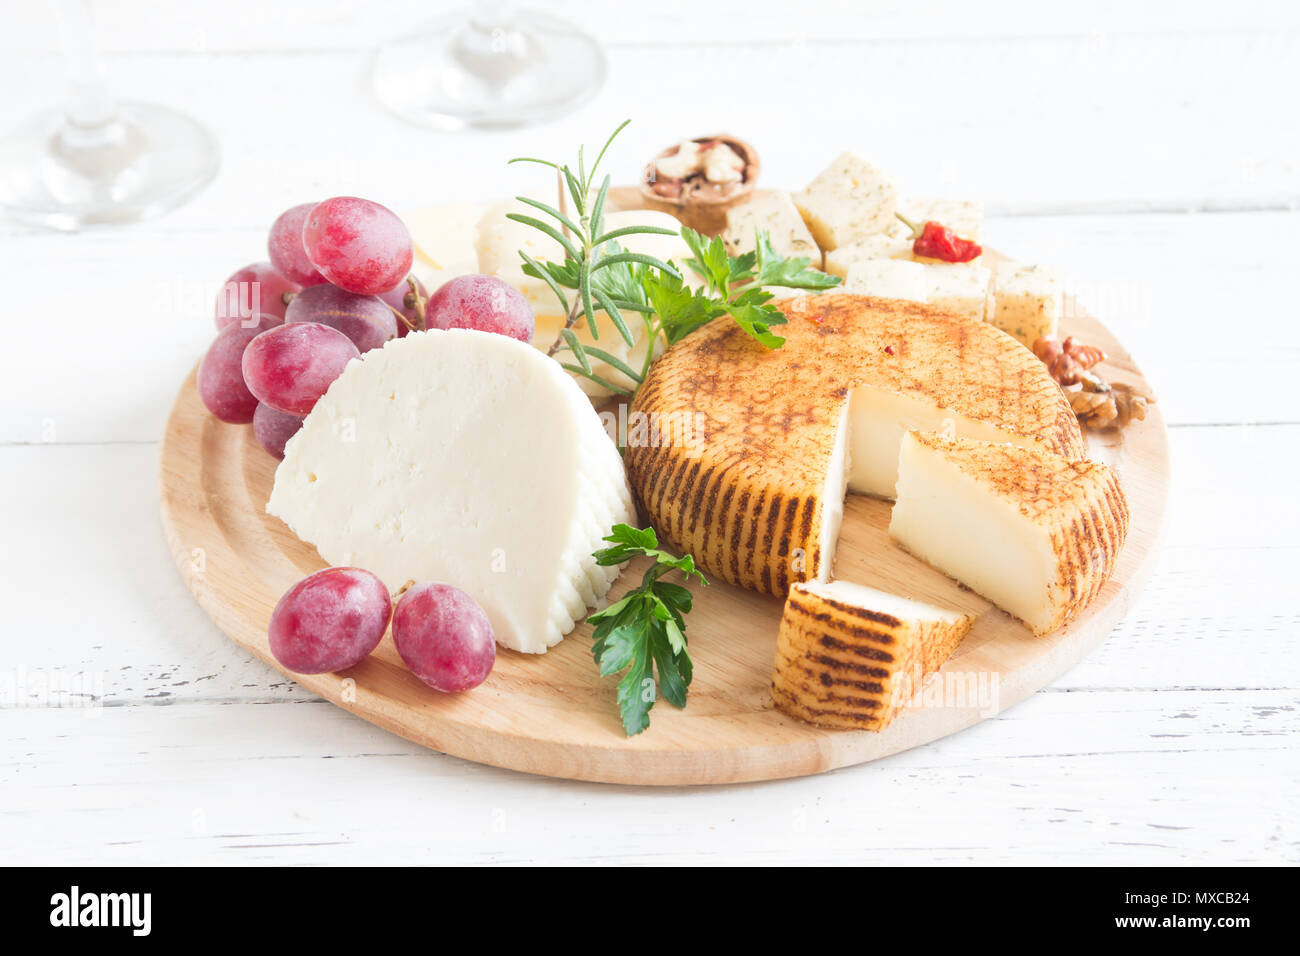 Käseplatte mit verschiedenen Käsesorten, Trauben, Nüsse über weiß Holz- Hintergrund, kopieren. Italienischen Käse und Obstteller. Stockfoto